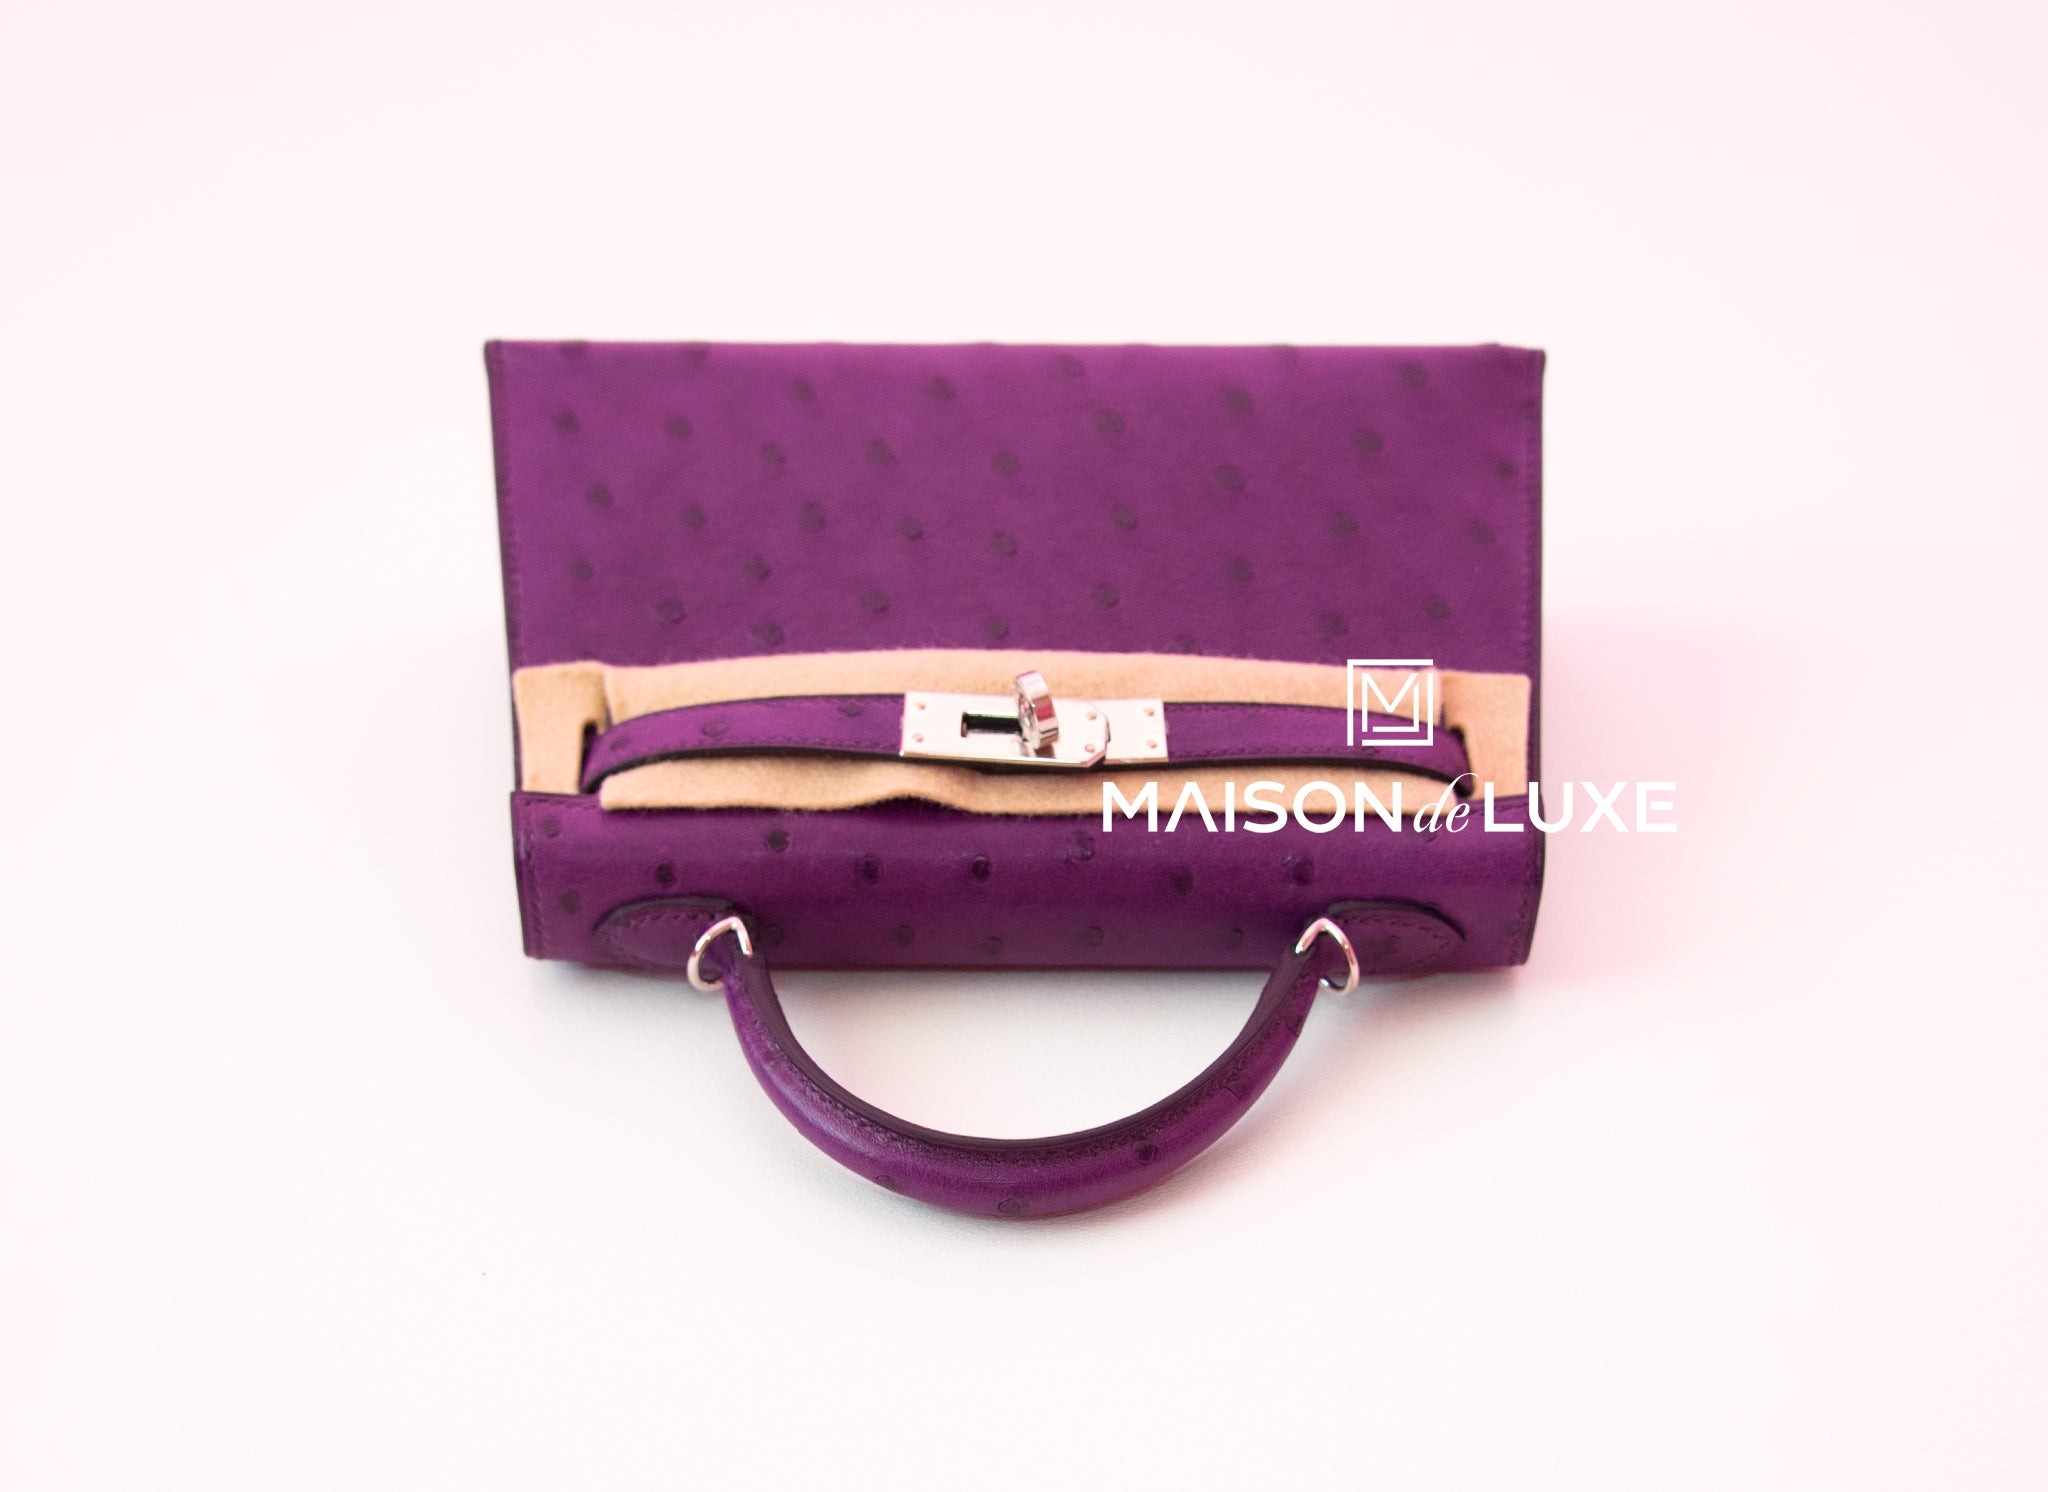 Hermès Kelly 20 Mini Sellier in pink Chèvre leather – Fancy Lux